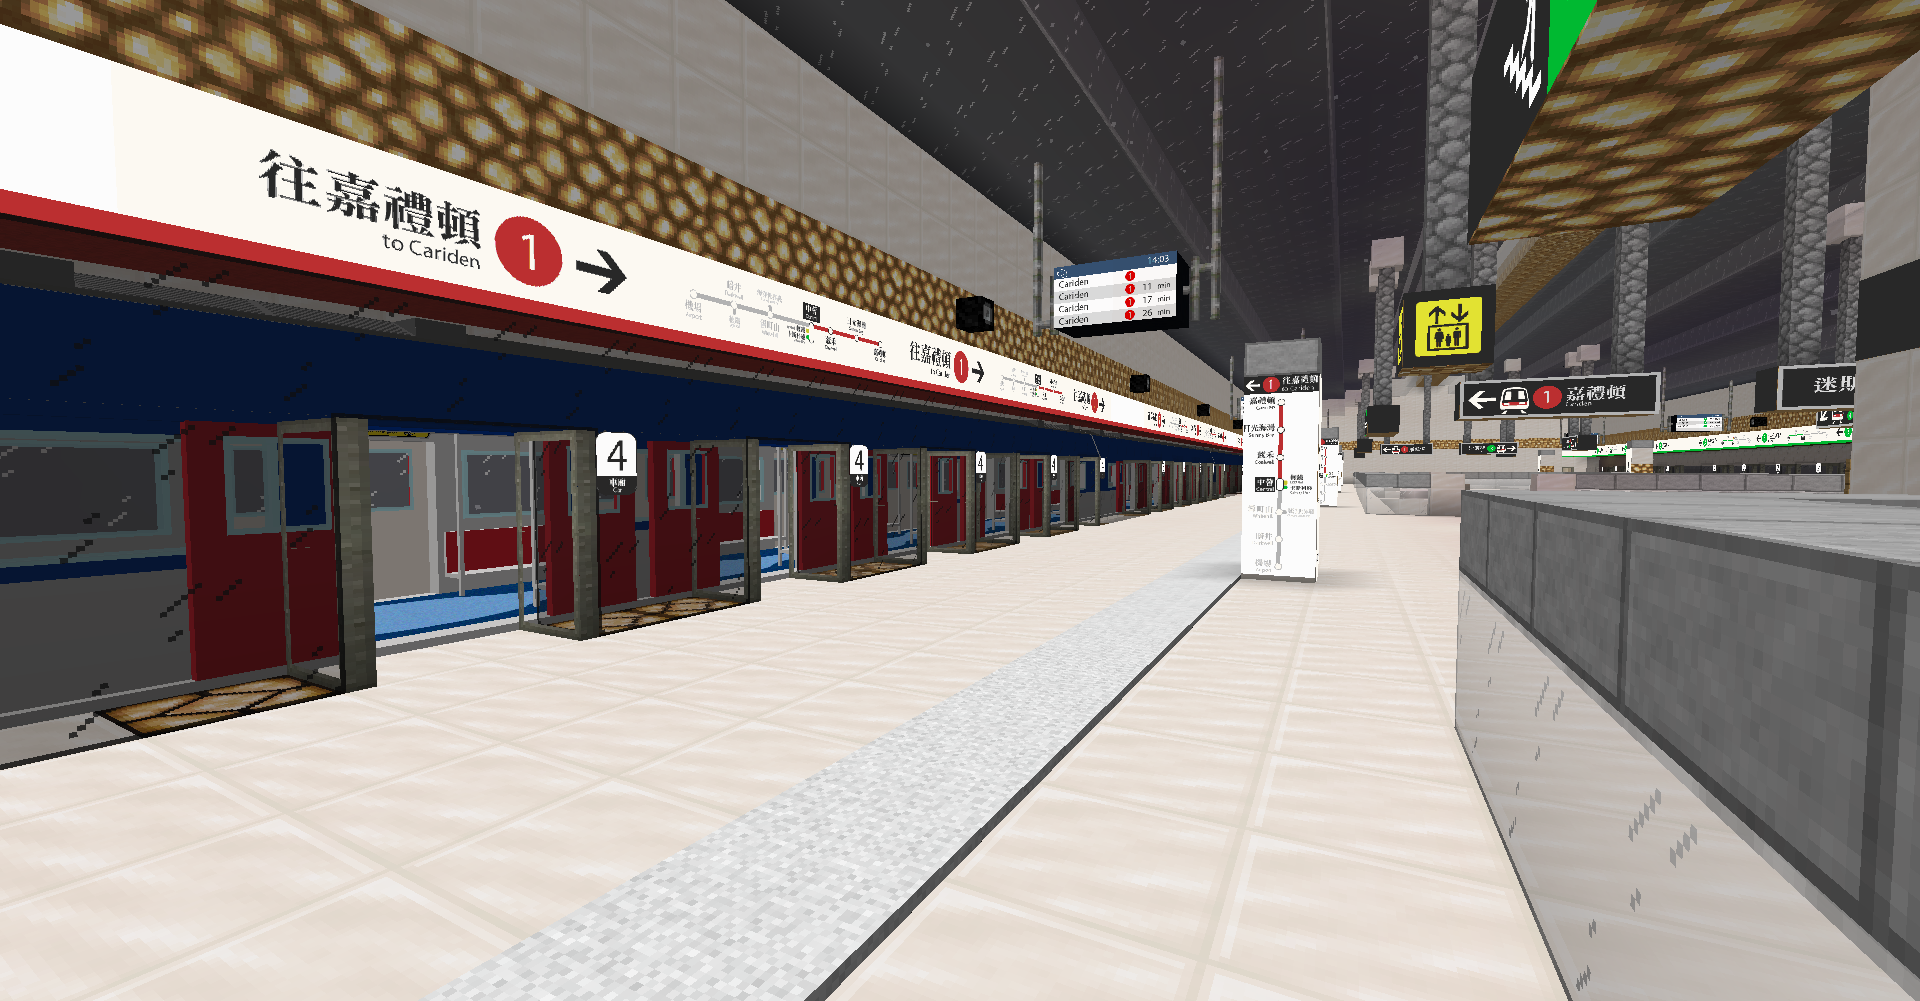 SCR Central Station Platform 1